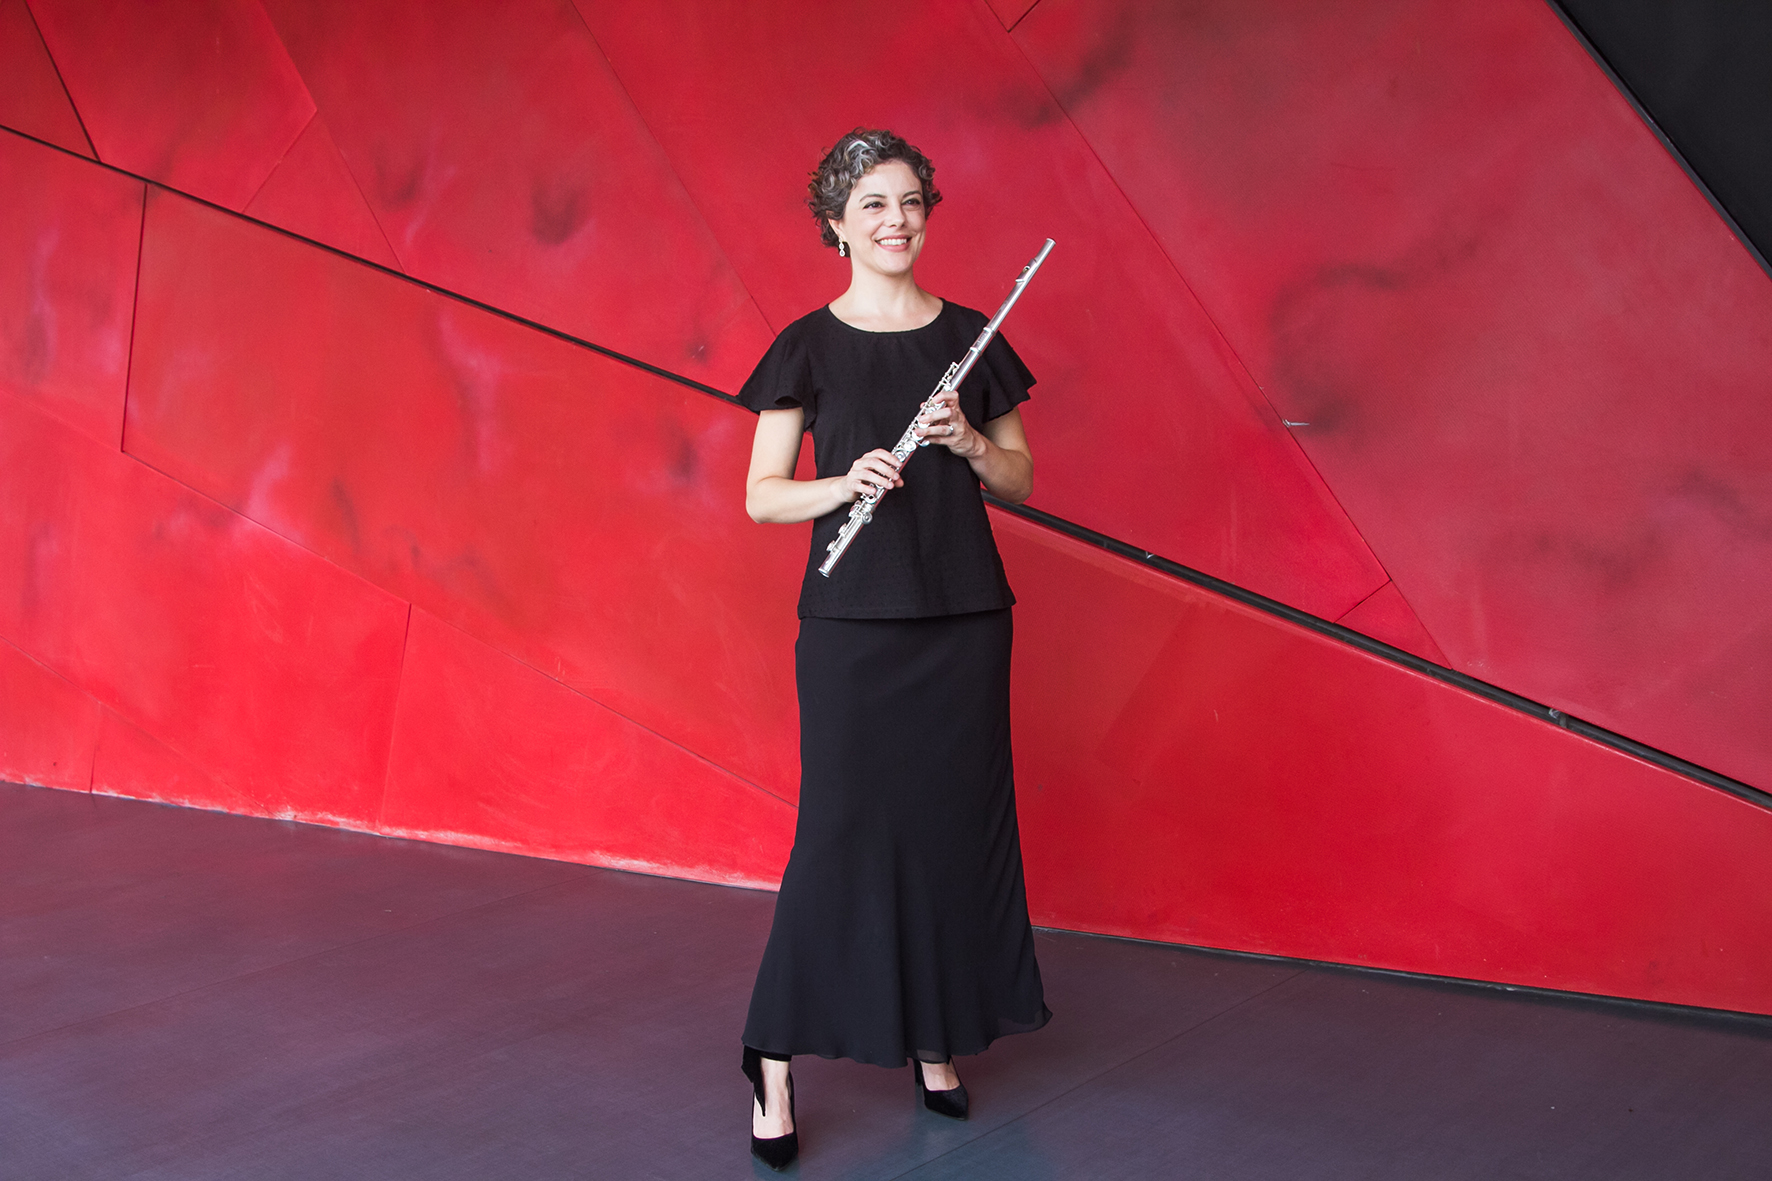 Filarmônica de Minas Gerais recebe principal flautista da orquestra, Cássia Lima, em concerto regido pelo maestro José Soares 